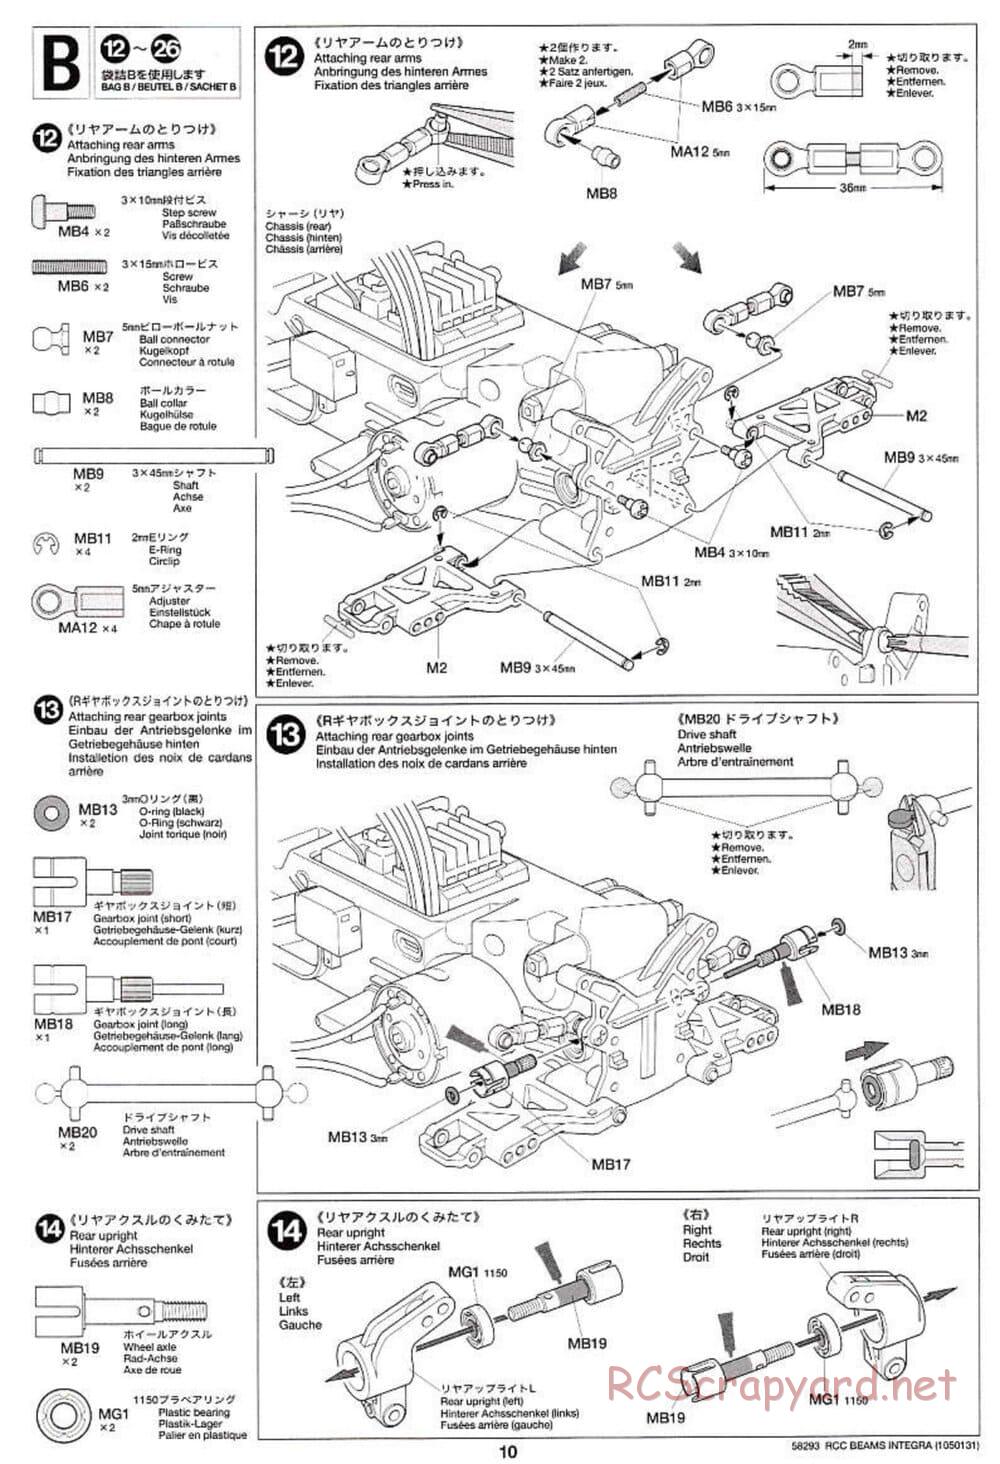 Tamiya - Beams Integra - TL-01 LA Chassis - Manual - Page 10